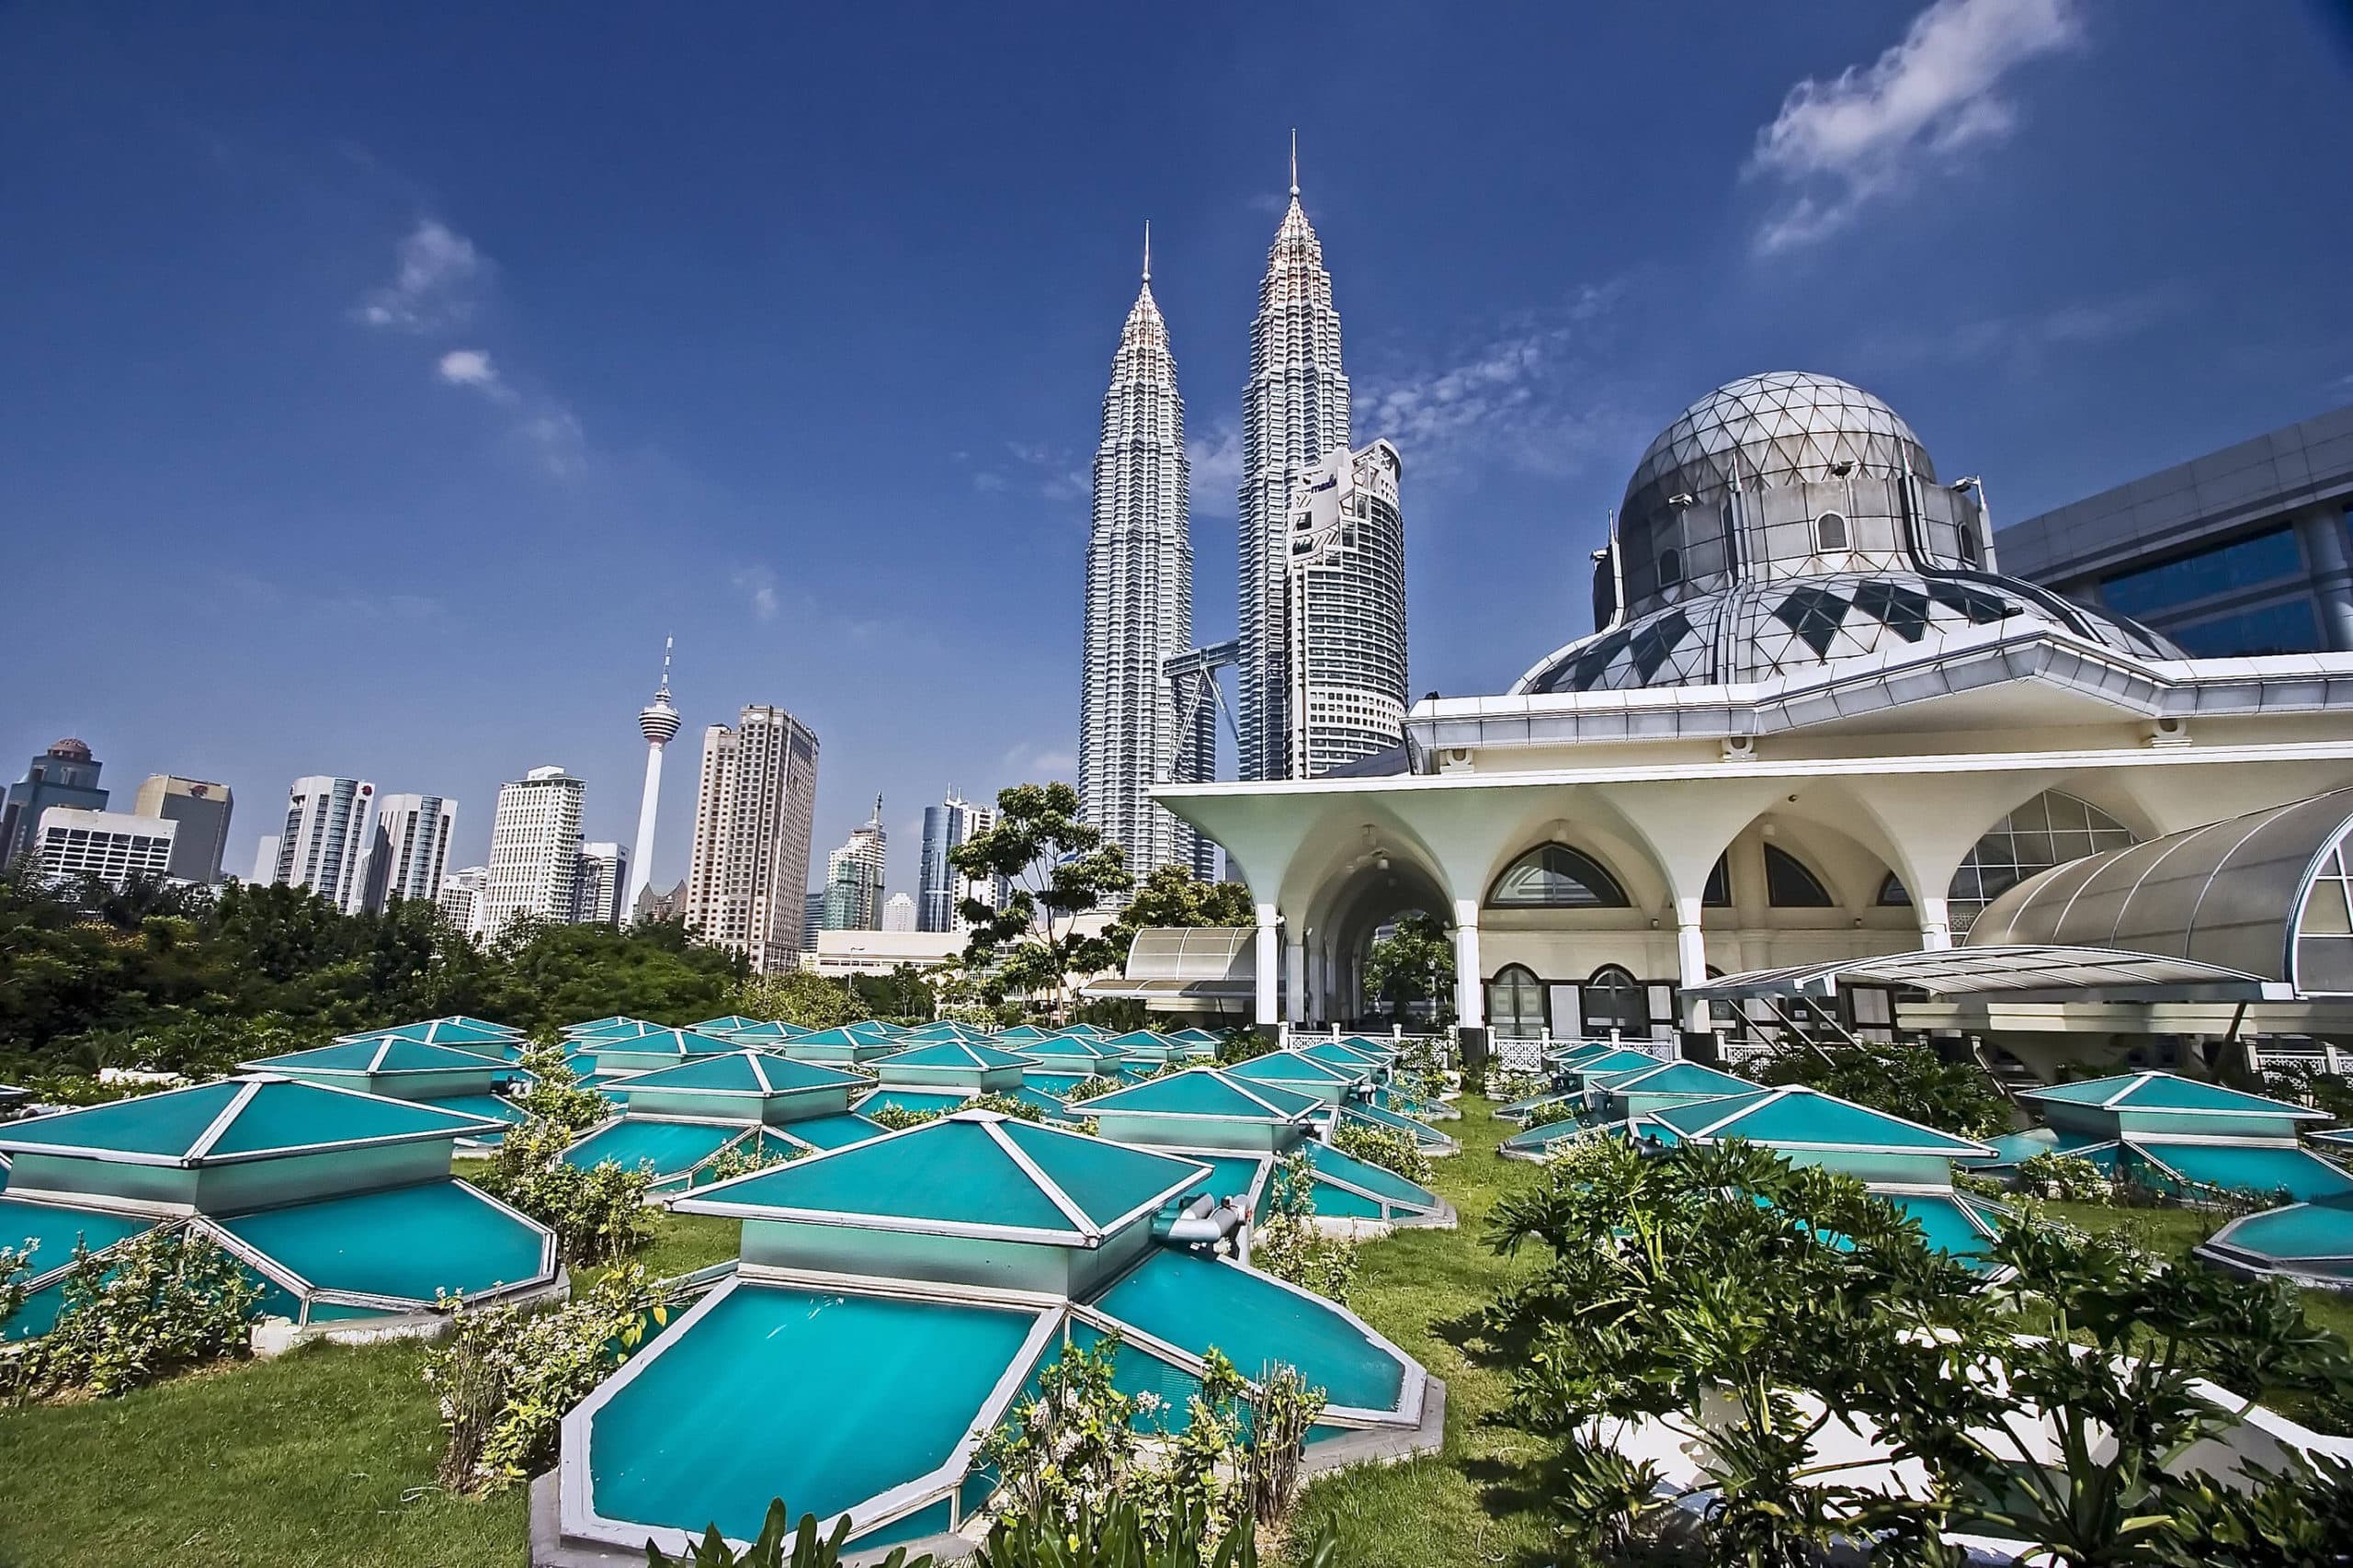 ماليزيا سياحة وأهم المزارات السياحية فيها ونصائح هامة لاختيار أماكن الزيارة